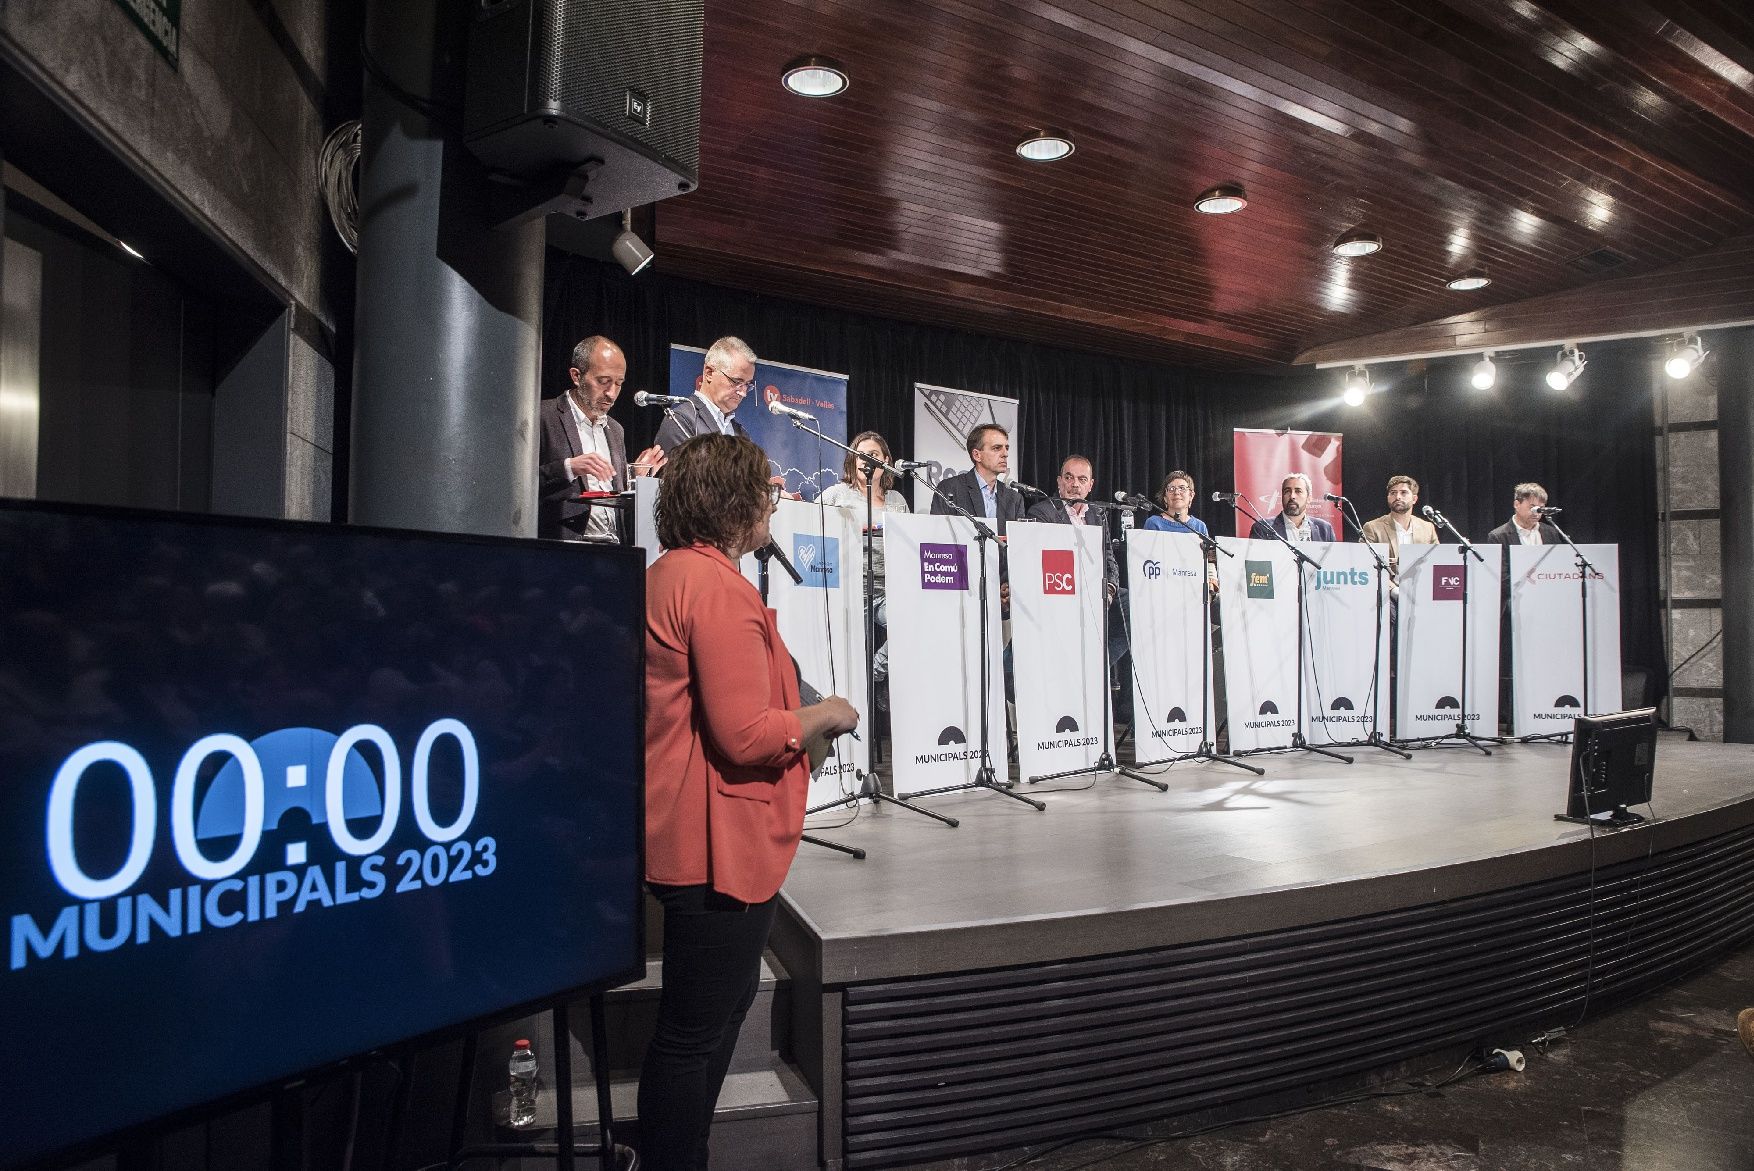 Les millors imatges del debat electoral del Col·legi de Periodistes a Manresa